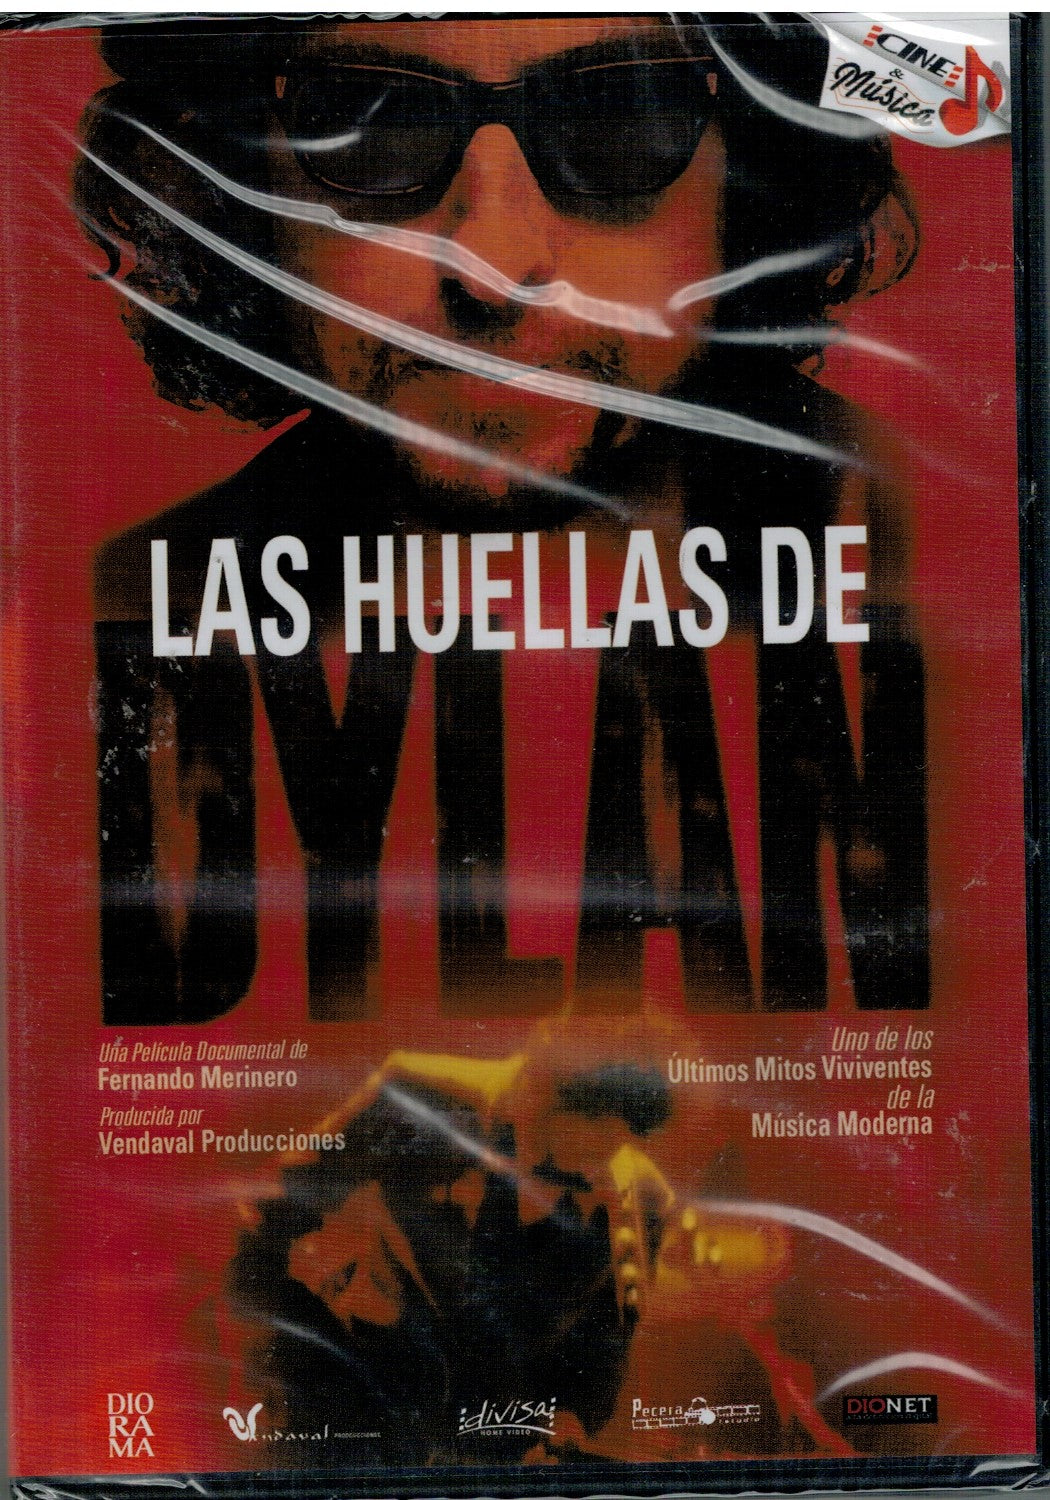 Las huellas de Dylan (DVD Nuevo) – KIOSKODVD